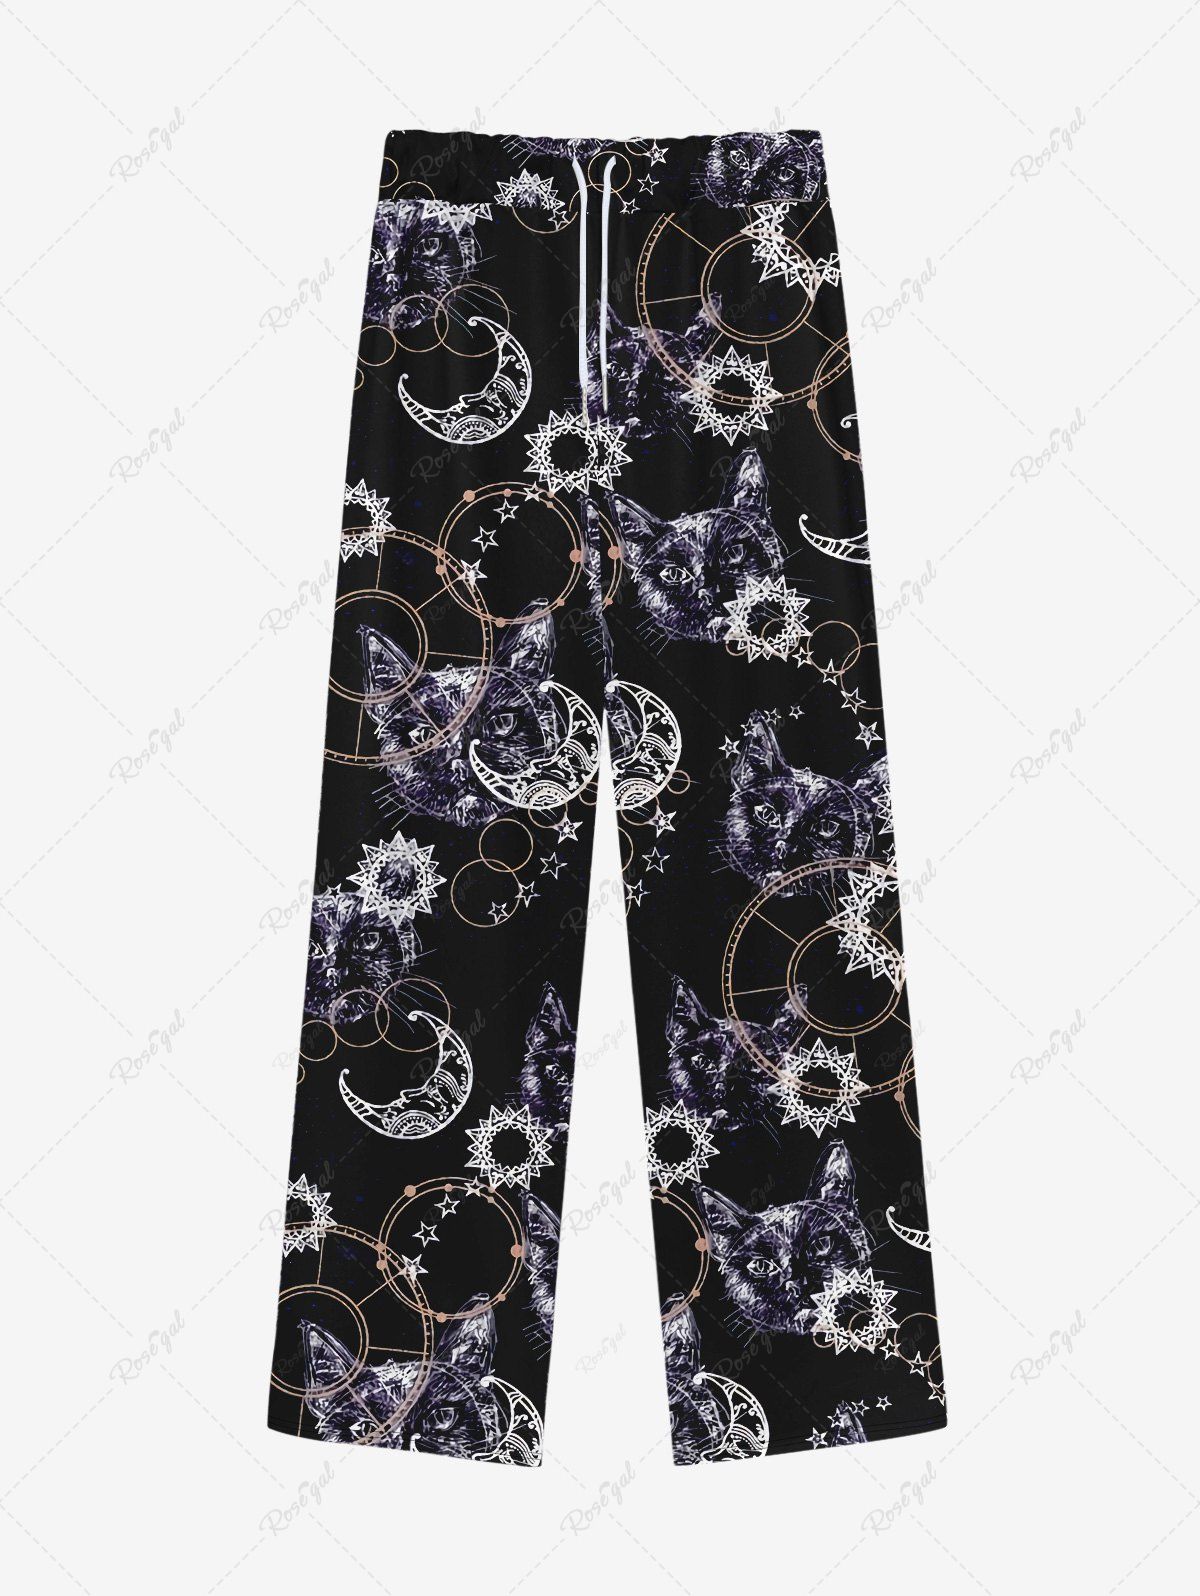 Pantalon de Survêtement Jogging Gothique Chat Lune et Ciel Etoilé Imprimés à Cordon Noir 8XL